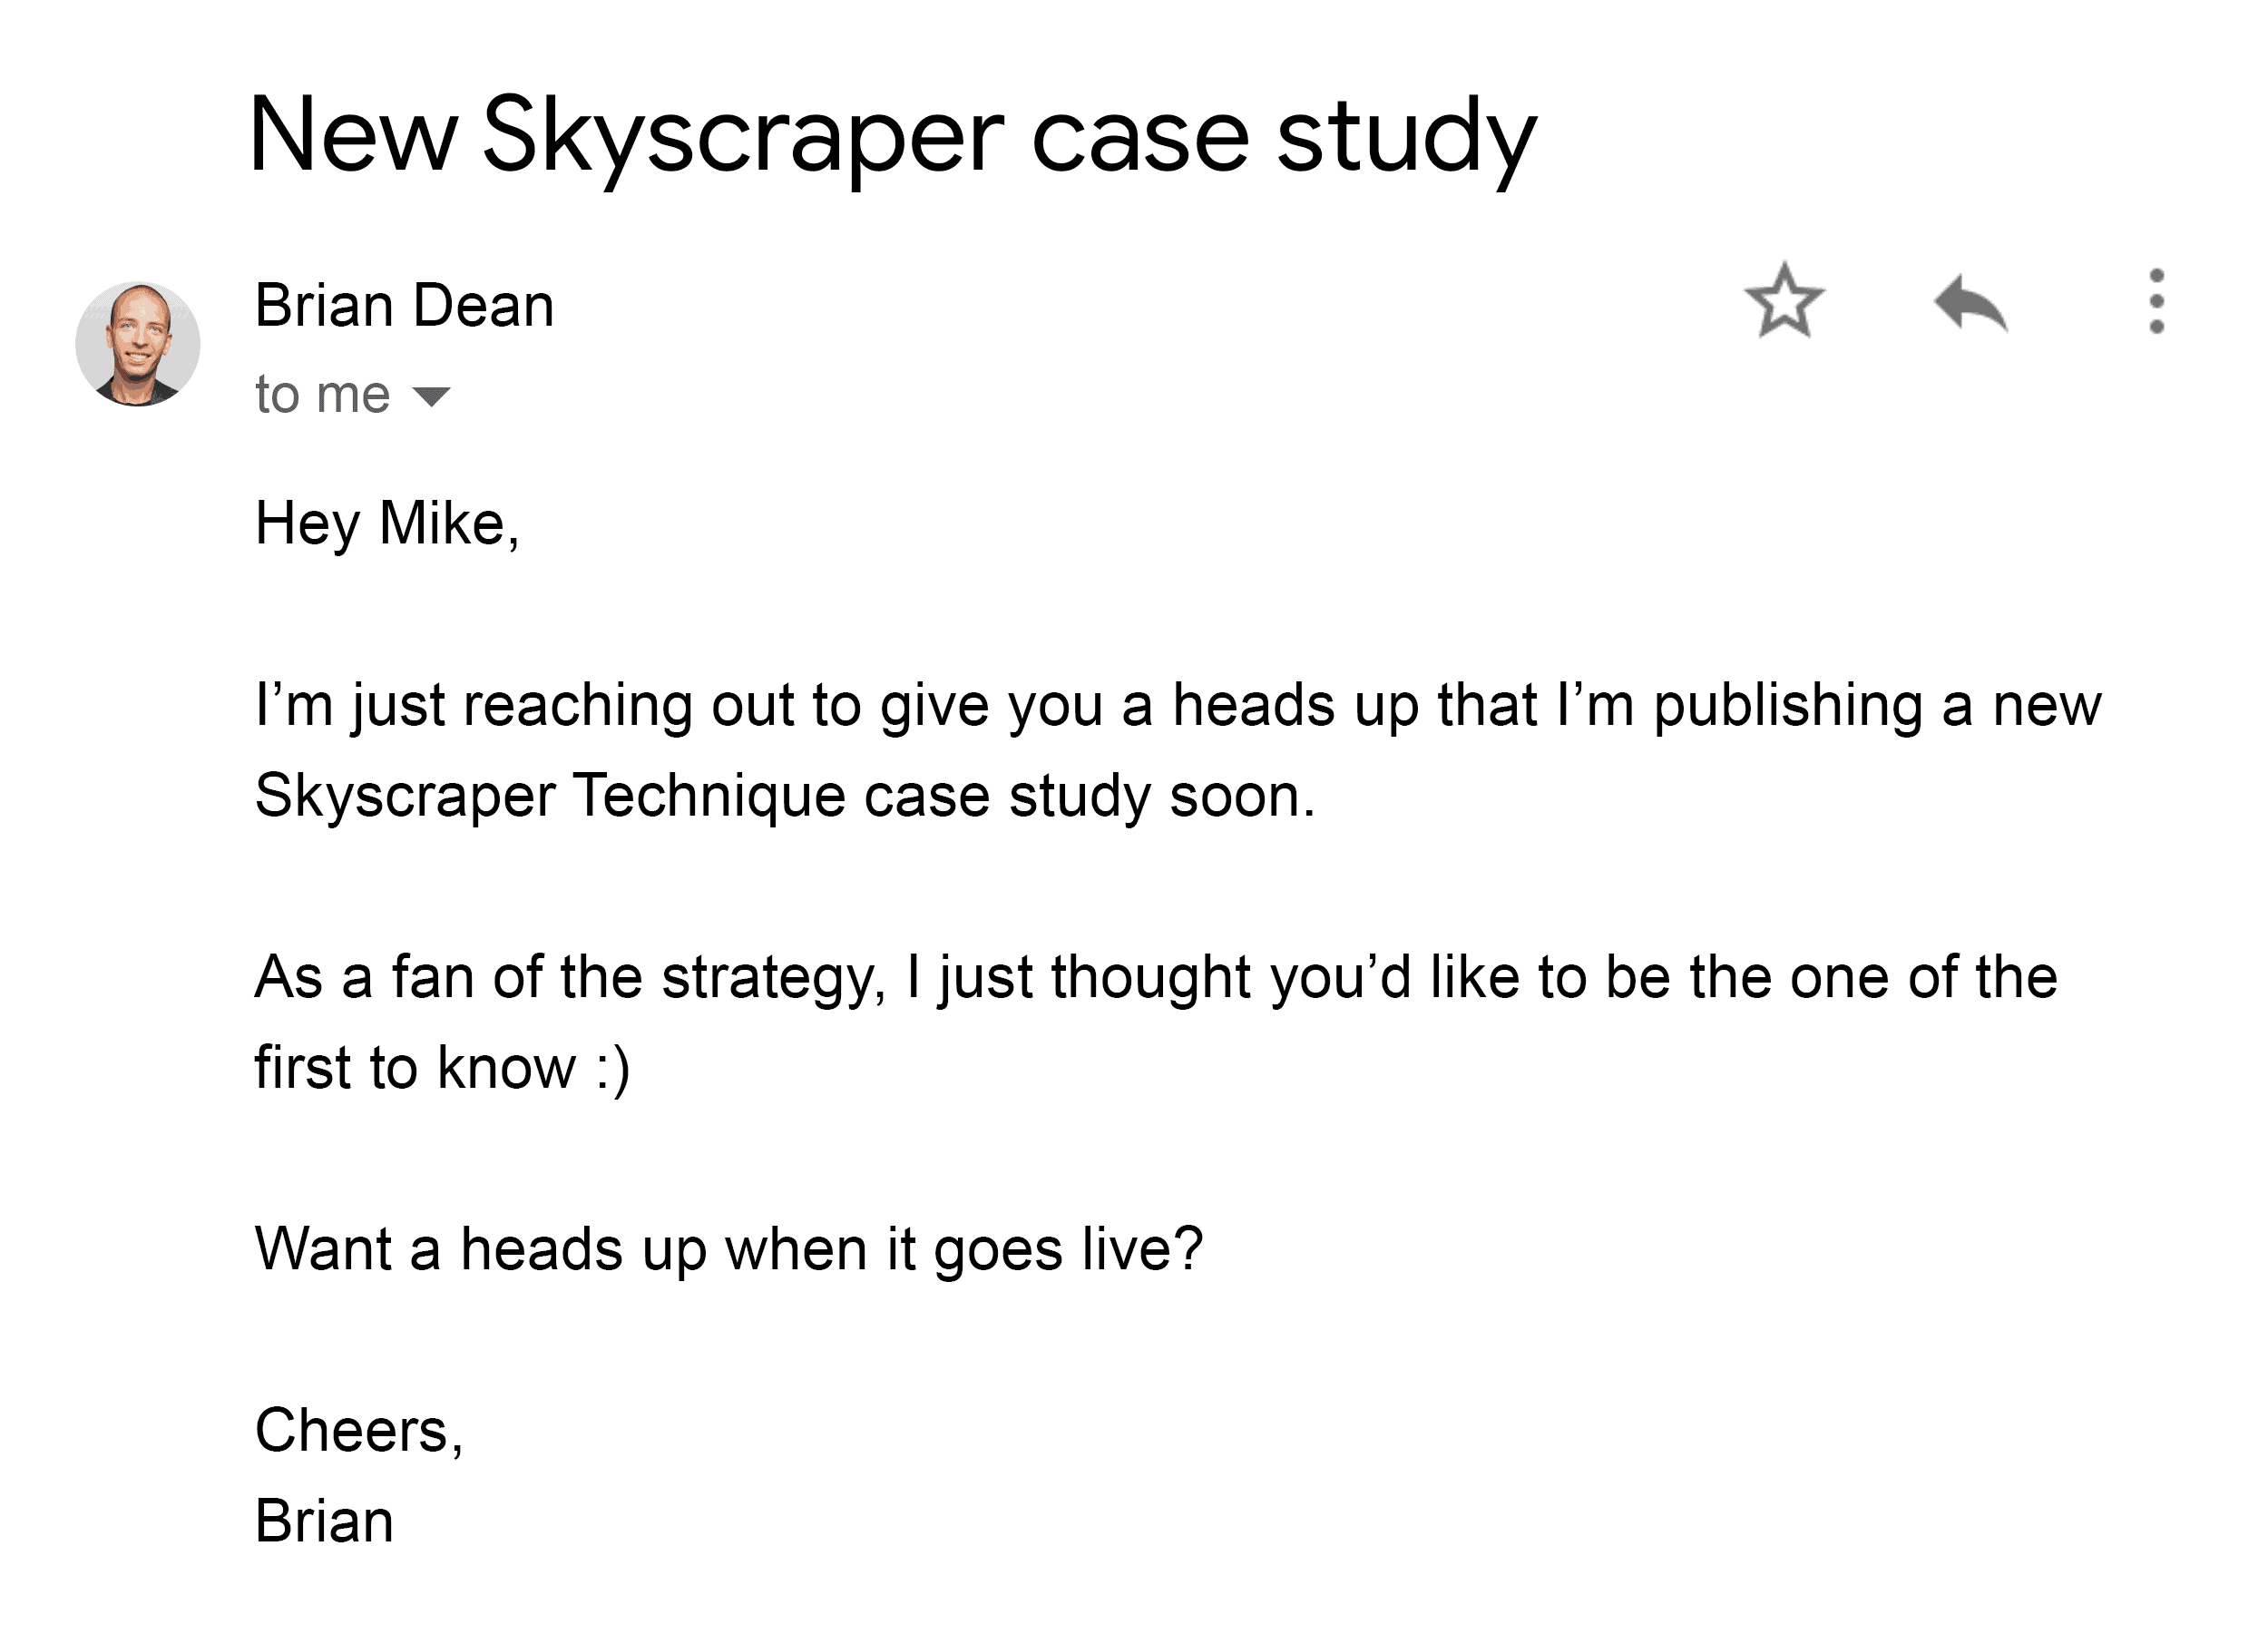 brian-outreach-email-skyscraper-technique